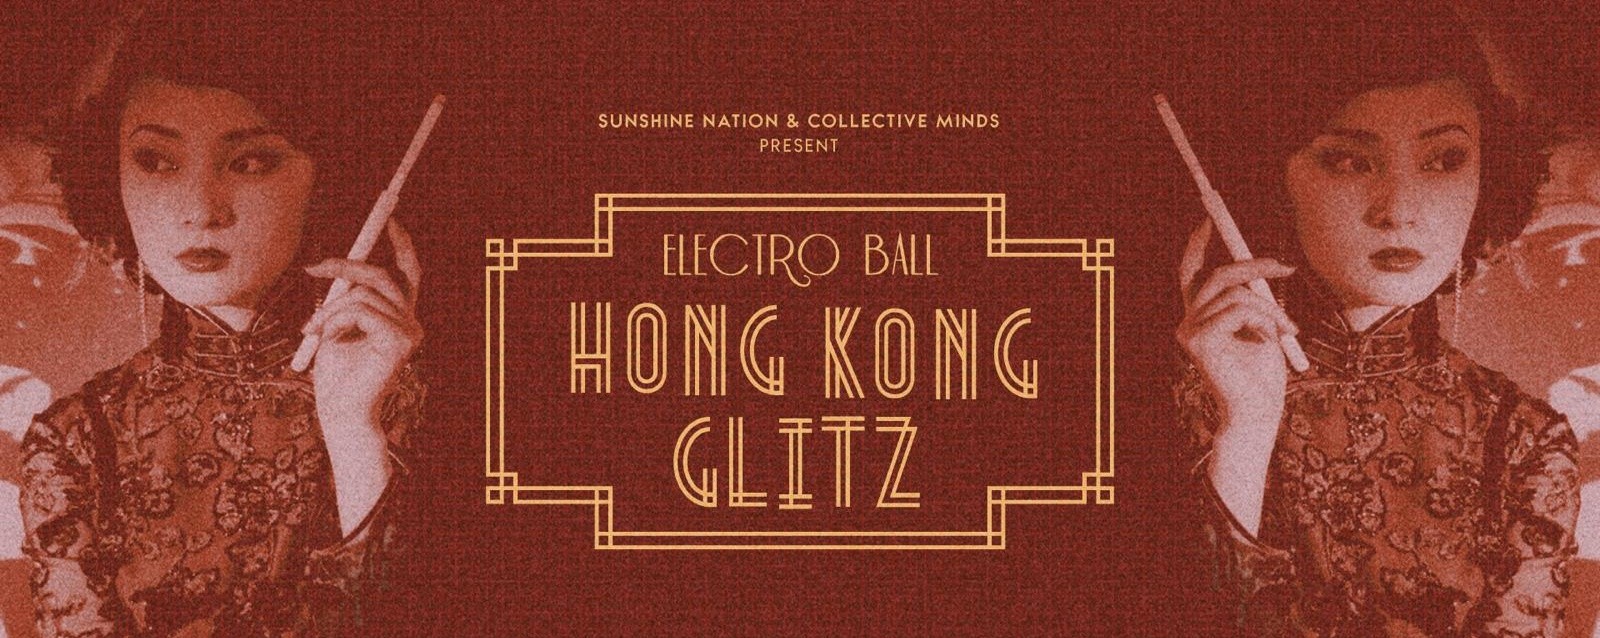 Electro Ball 2018: Hong Kong Glitz